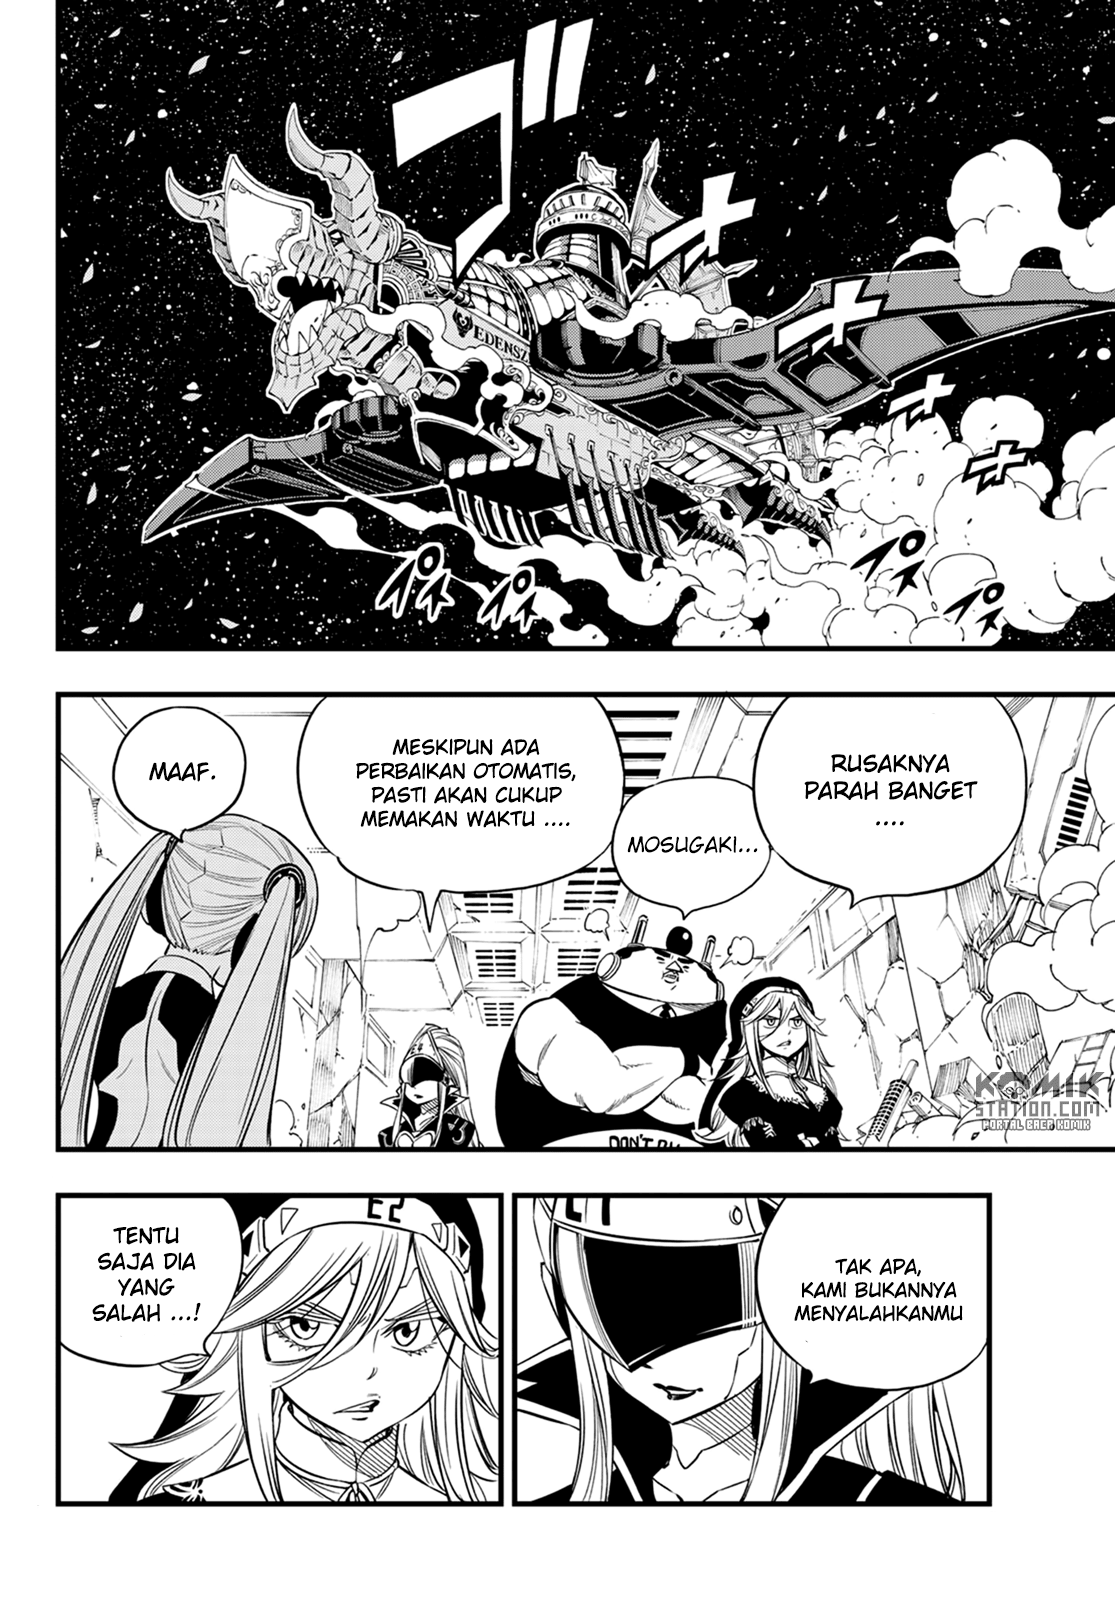 Eden’s Zero Chapter 42